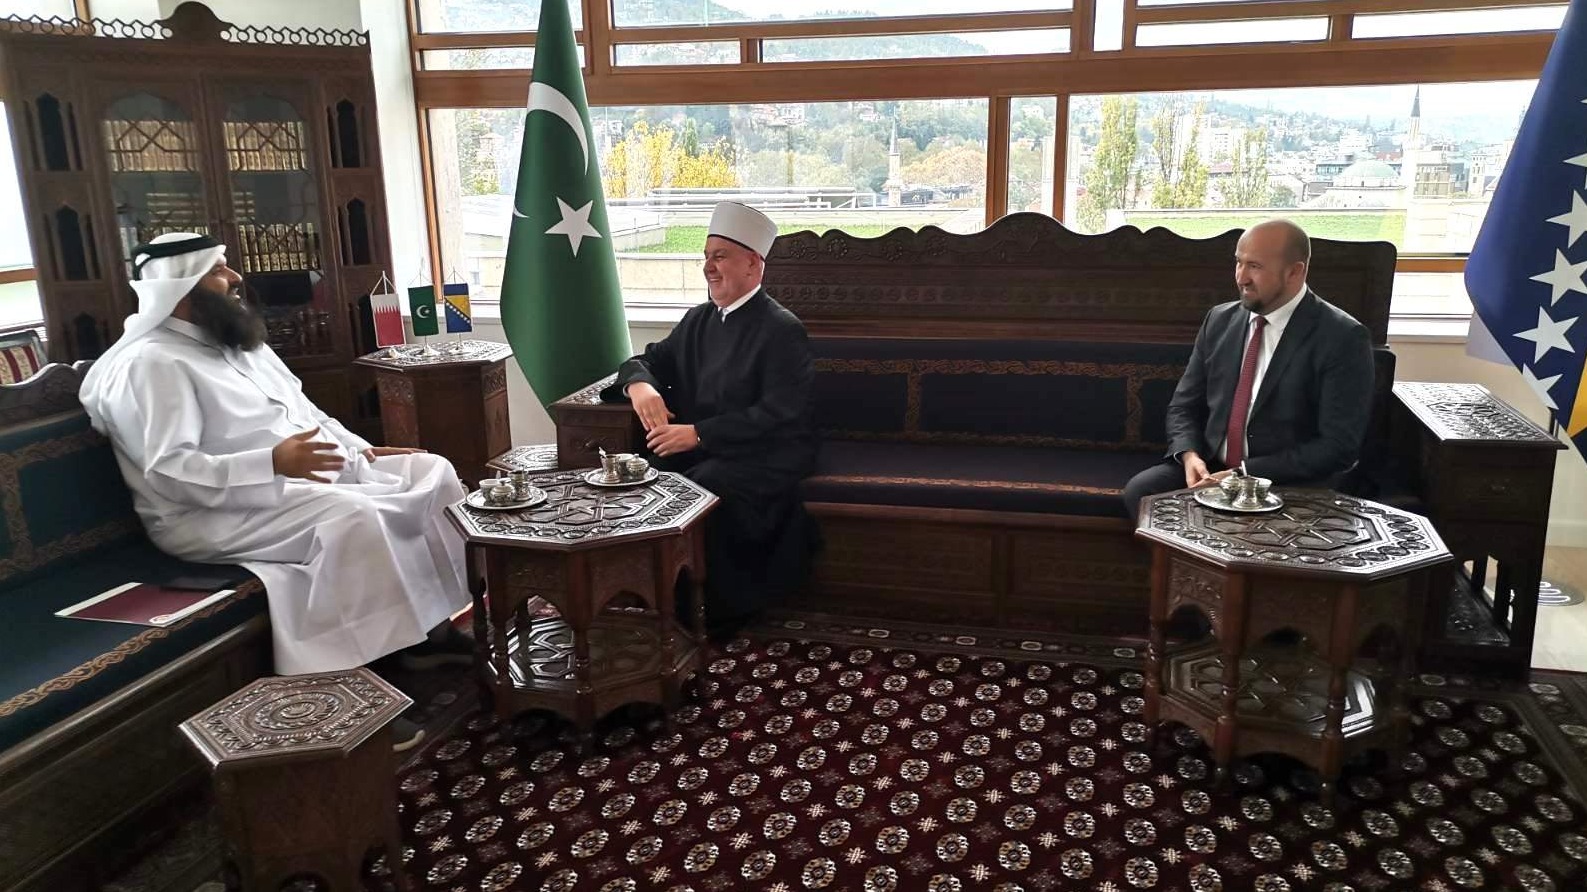 Reisul-ulemu posjetio ambasador Države Katar u Bosni i Hercegovini